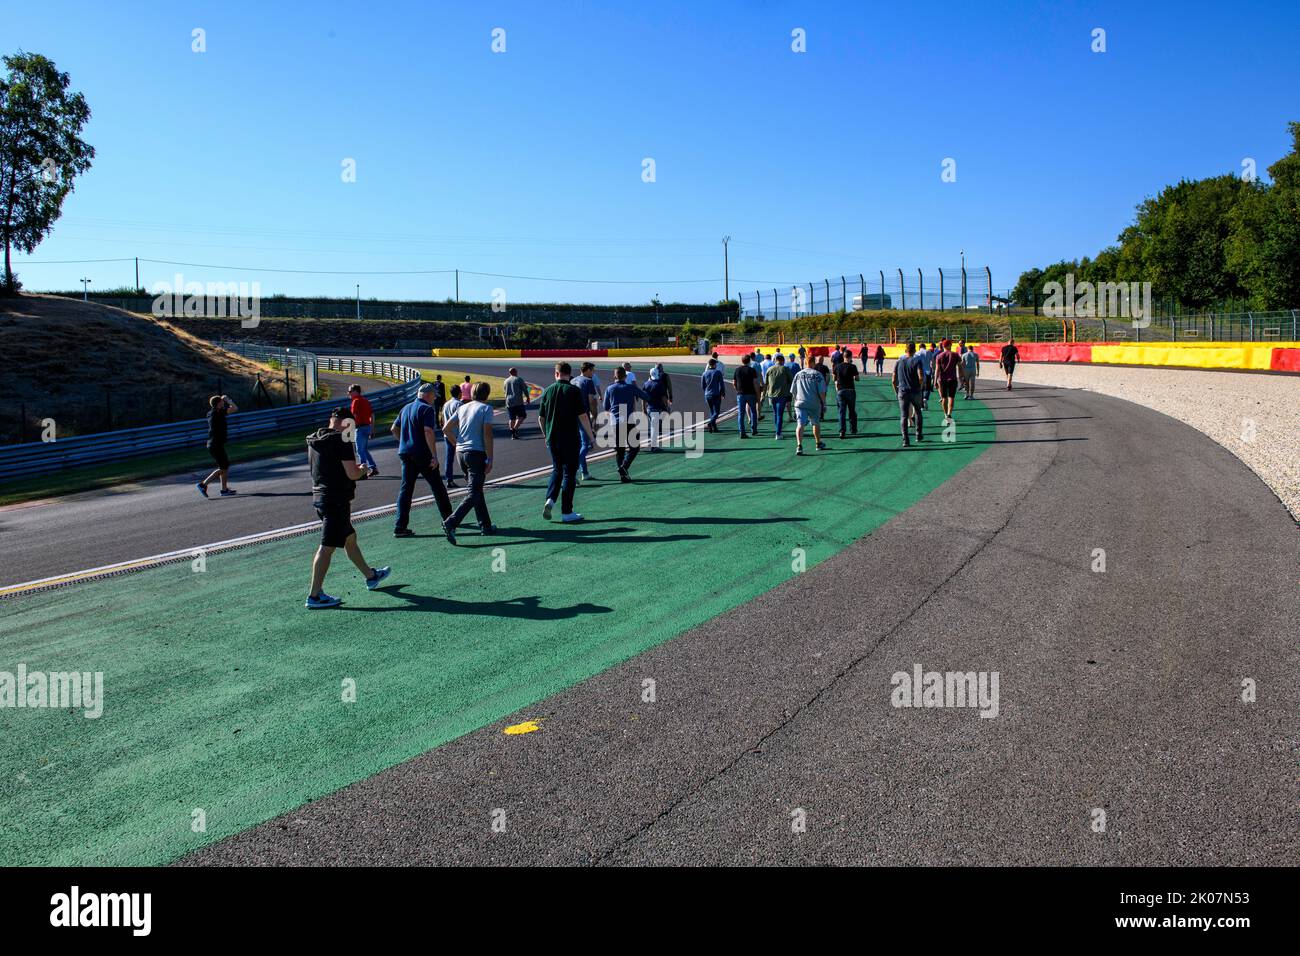 Teilnehmer von Trackday an der Gleisinspektion der Kurve auf der Rennstrecke für Motorsport-Autorennen der Teilnehmer von Trackday, FIA Formula 1 Circuit Stockfoto